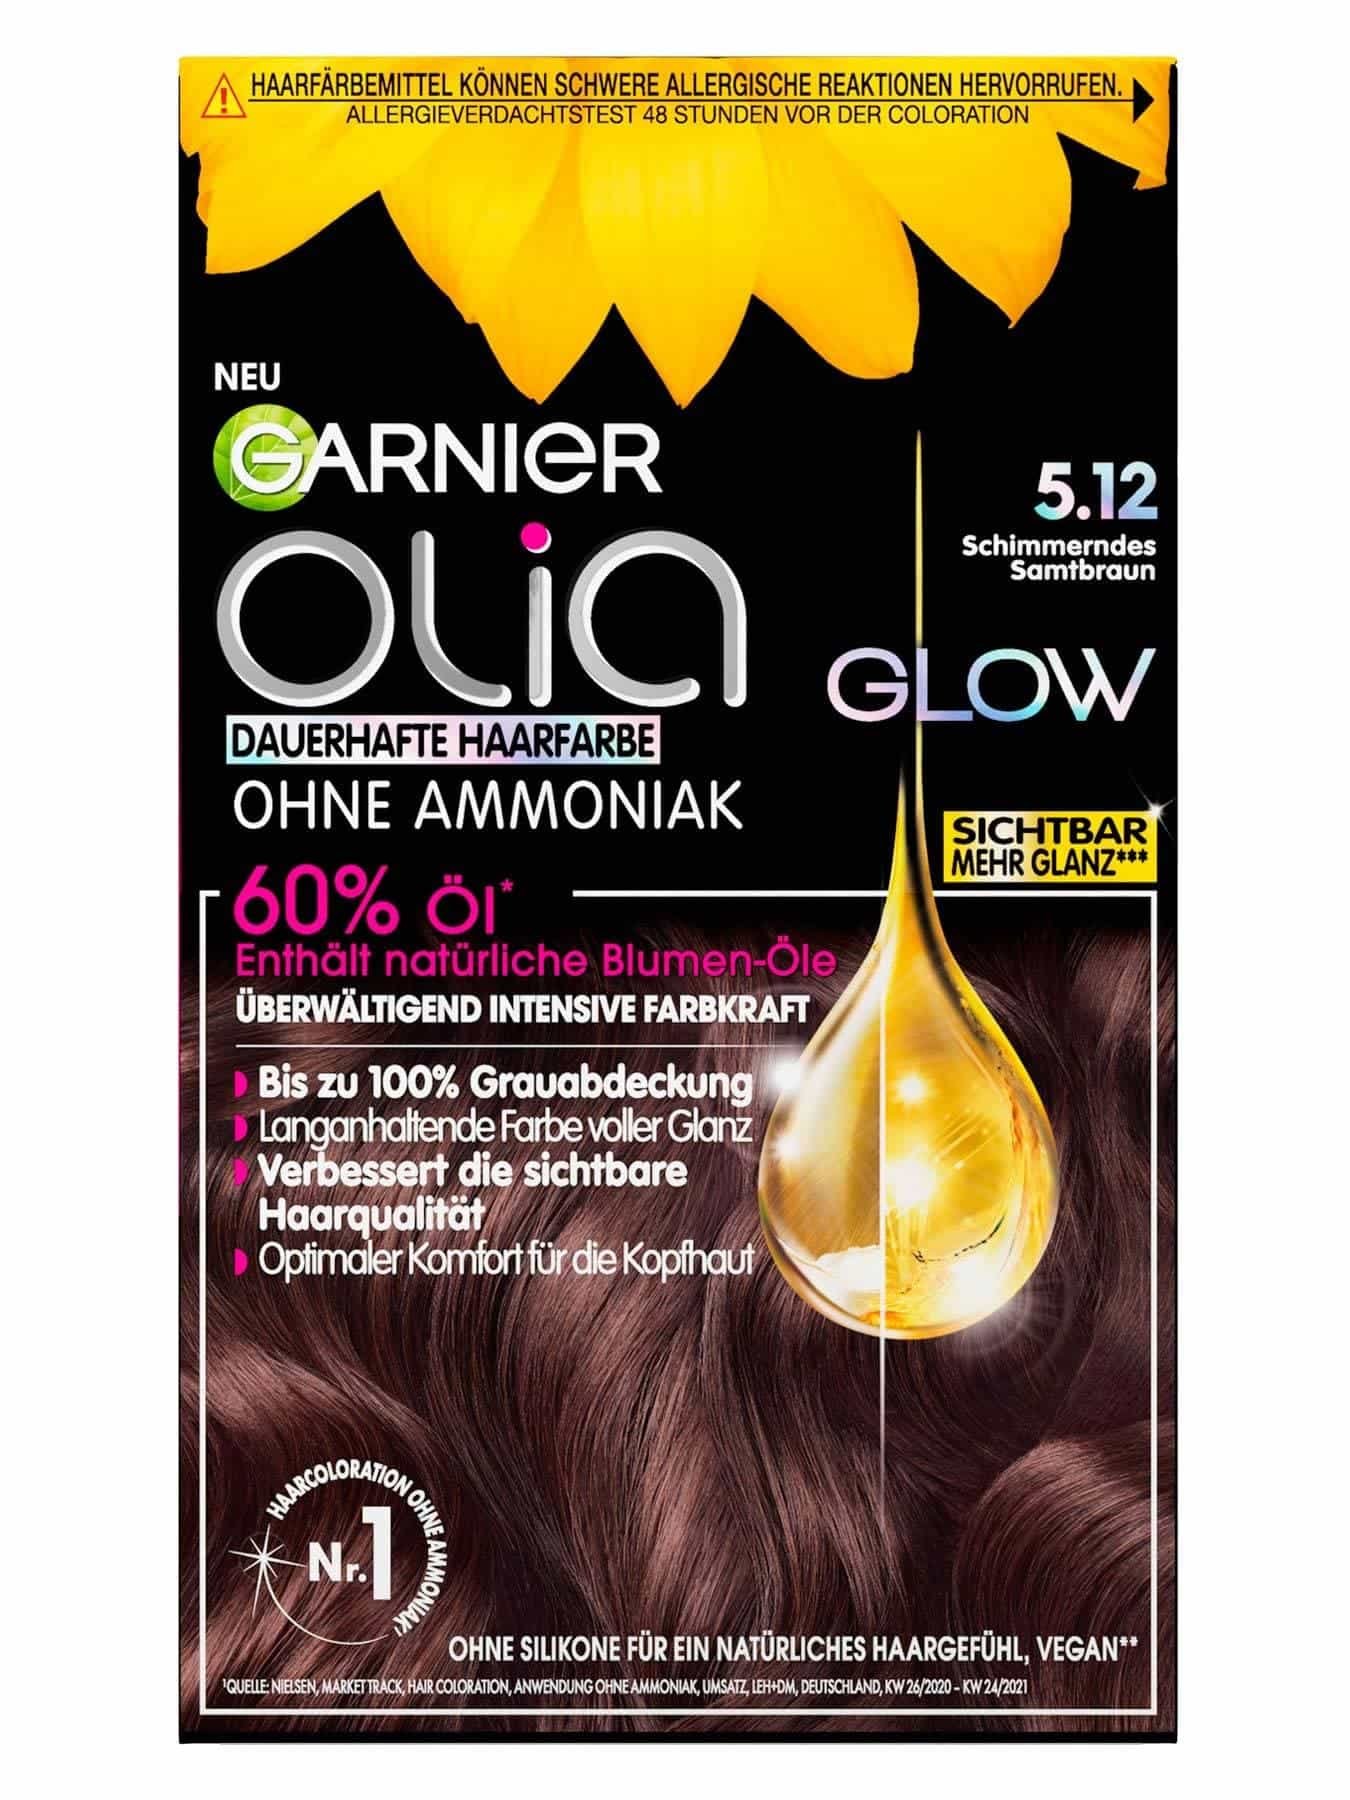 Die Garnier Haarfarben-Produkte Garnier der in Übersicht